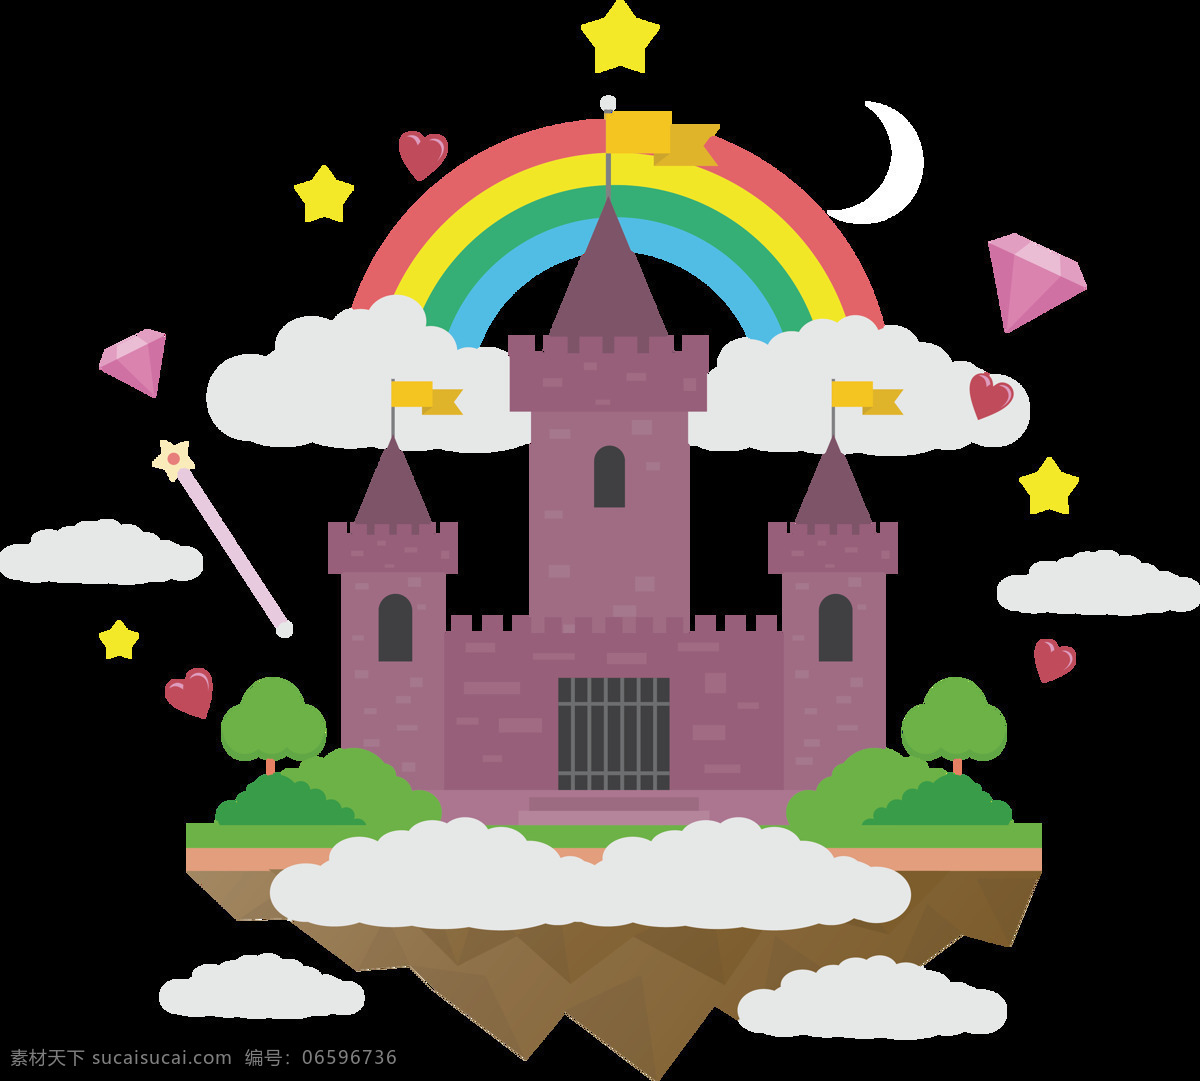 漂亮 卡通 城堡 图案 元素 彩虹 艺术图案 卡通素材 教堂 欧式城堡 彩色城堡 白色 城市 抽象设计 房子大全 房子素材 高楼 迪斯尼 欧洲城堡 建筑家居